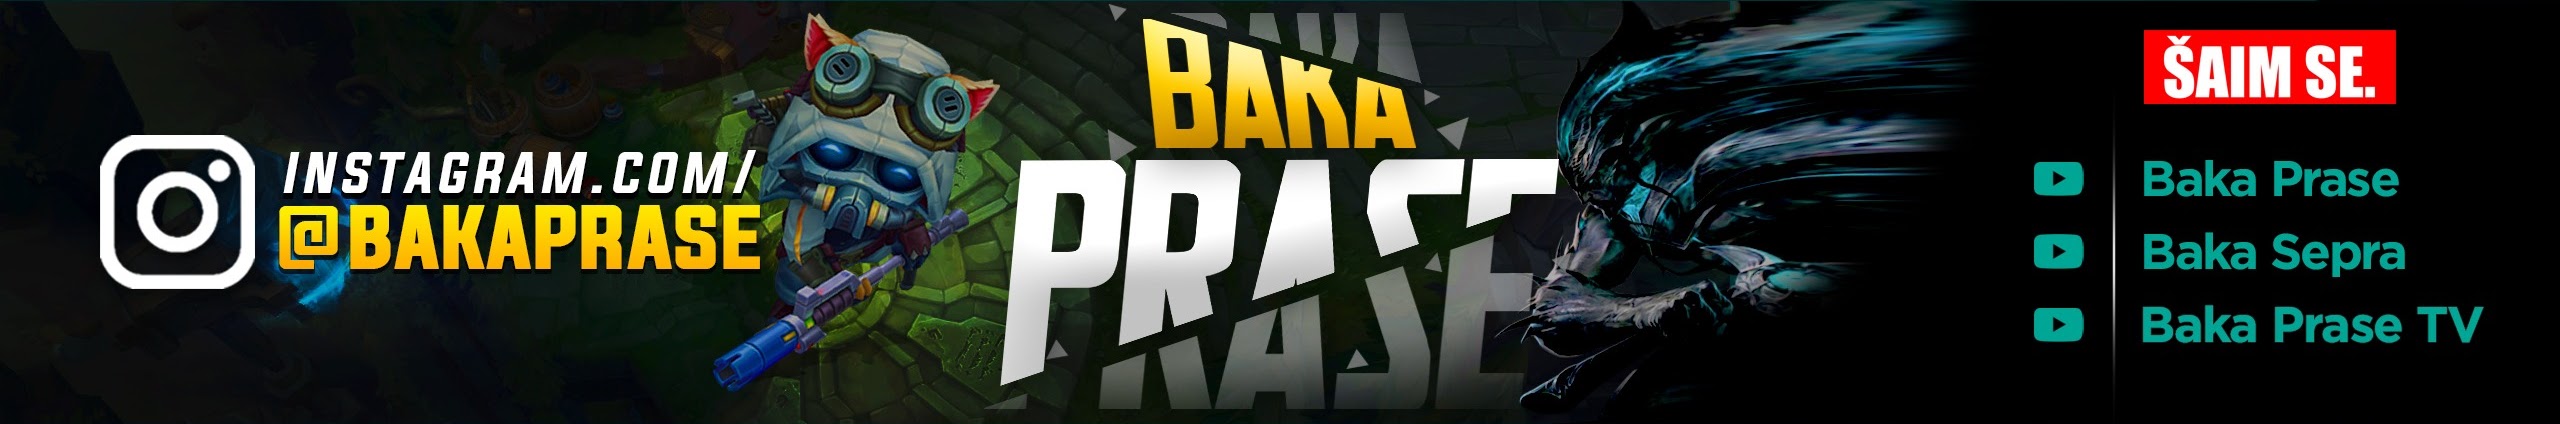 Baka Prase - On BiH Link Video